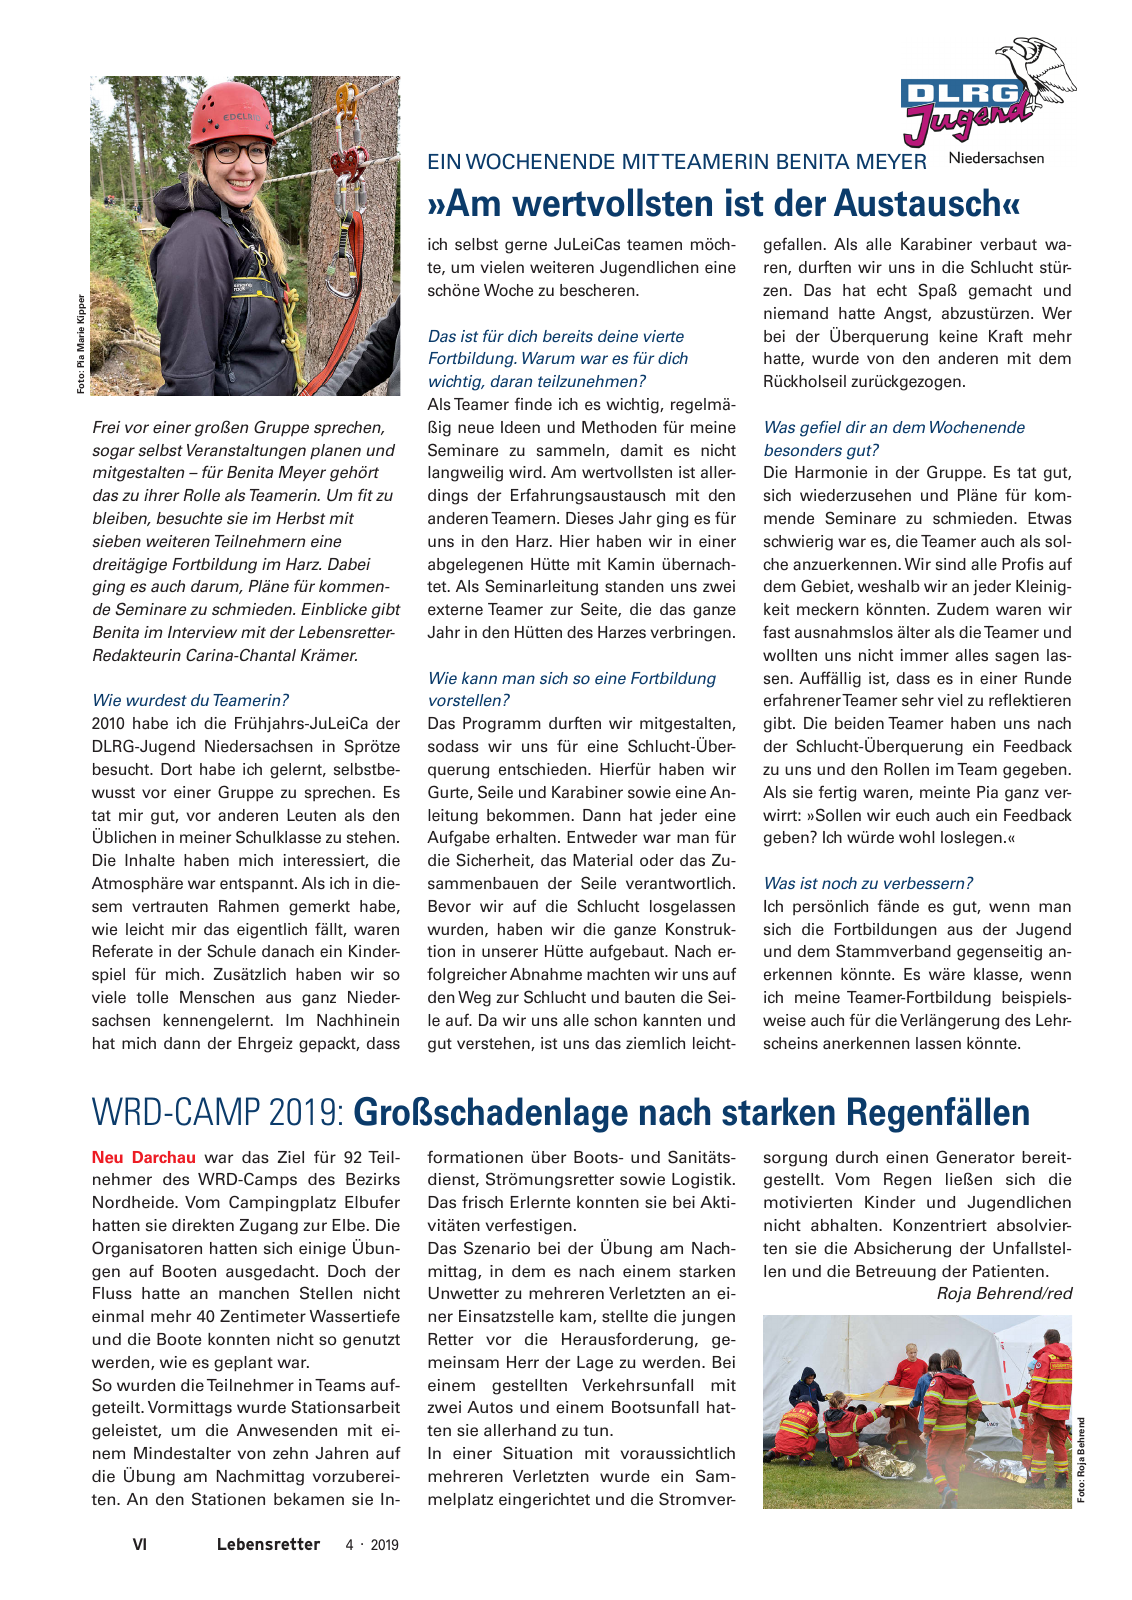 Vorschau Lebensretter 4/2019 -  Niedersachsen Regionalausgabe Seite 8